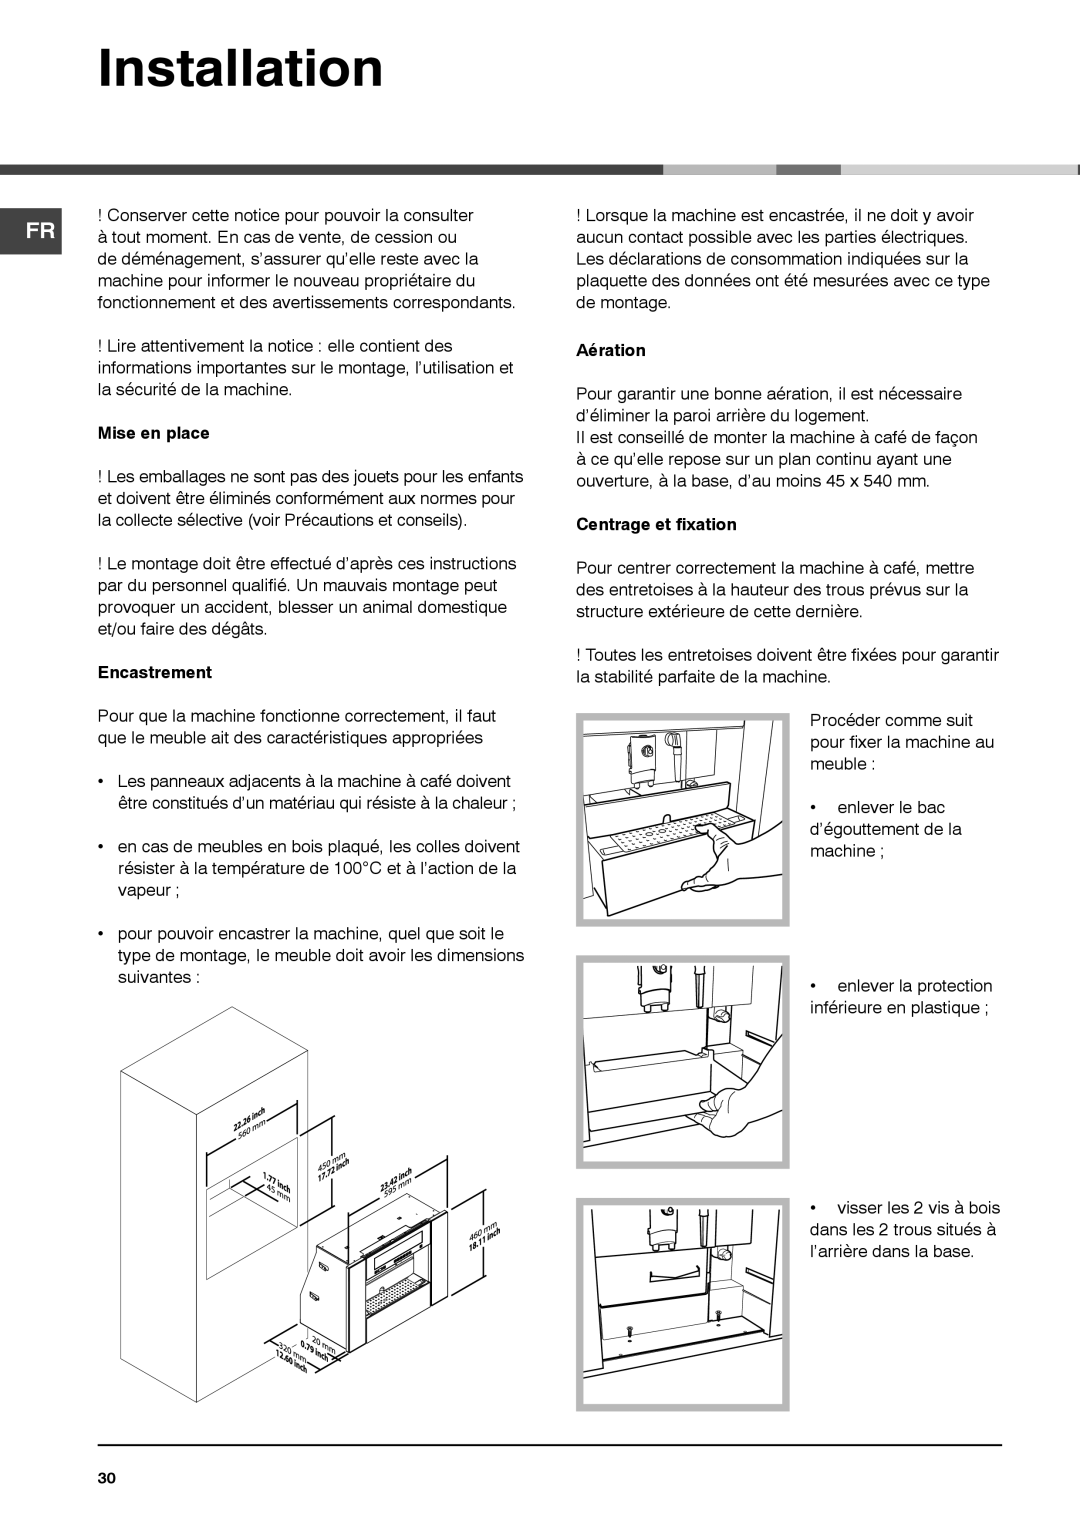 Ariston MCA15NAP manual Mise en place, Encastrement, Aération, Centrage et fixation 